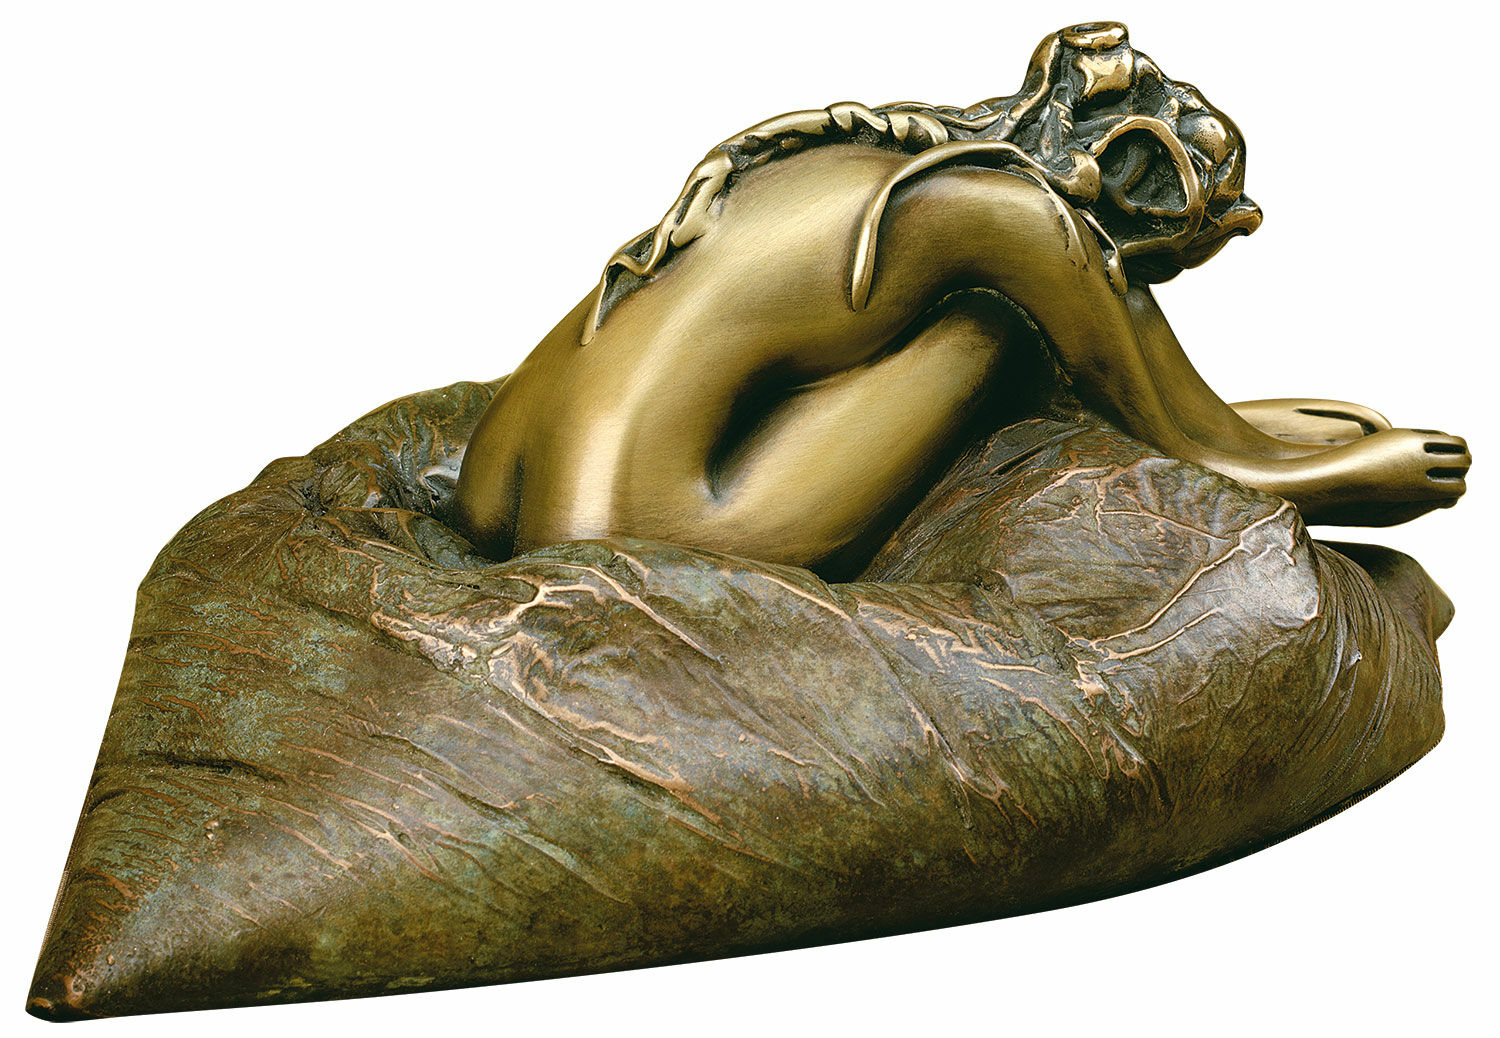 Skulptur "På puden", bronze von Bruno Bruni